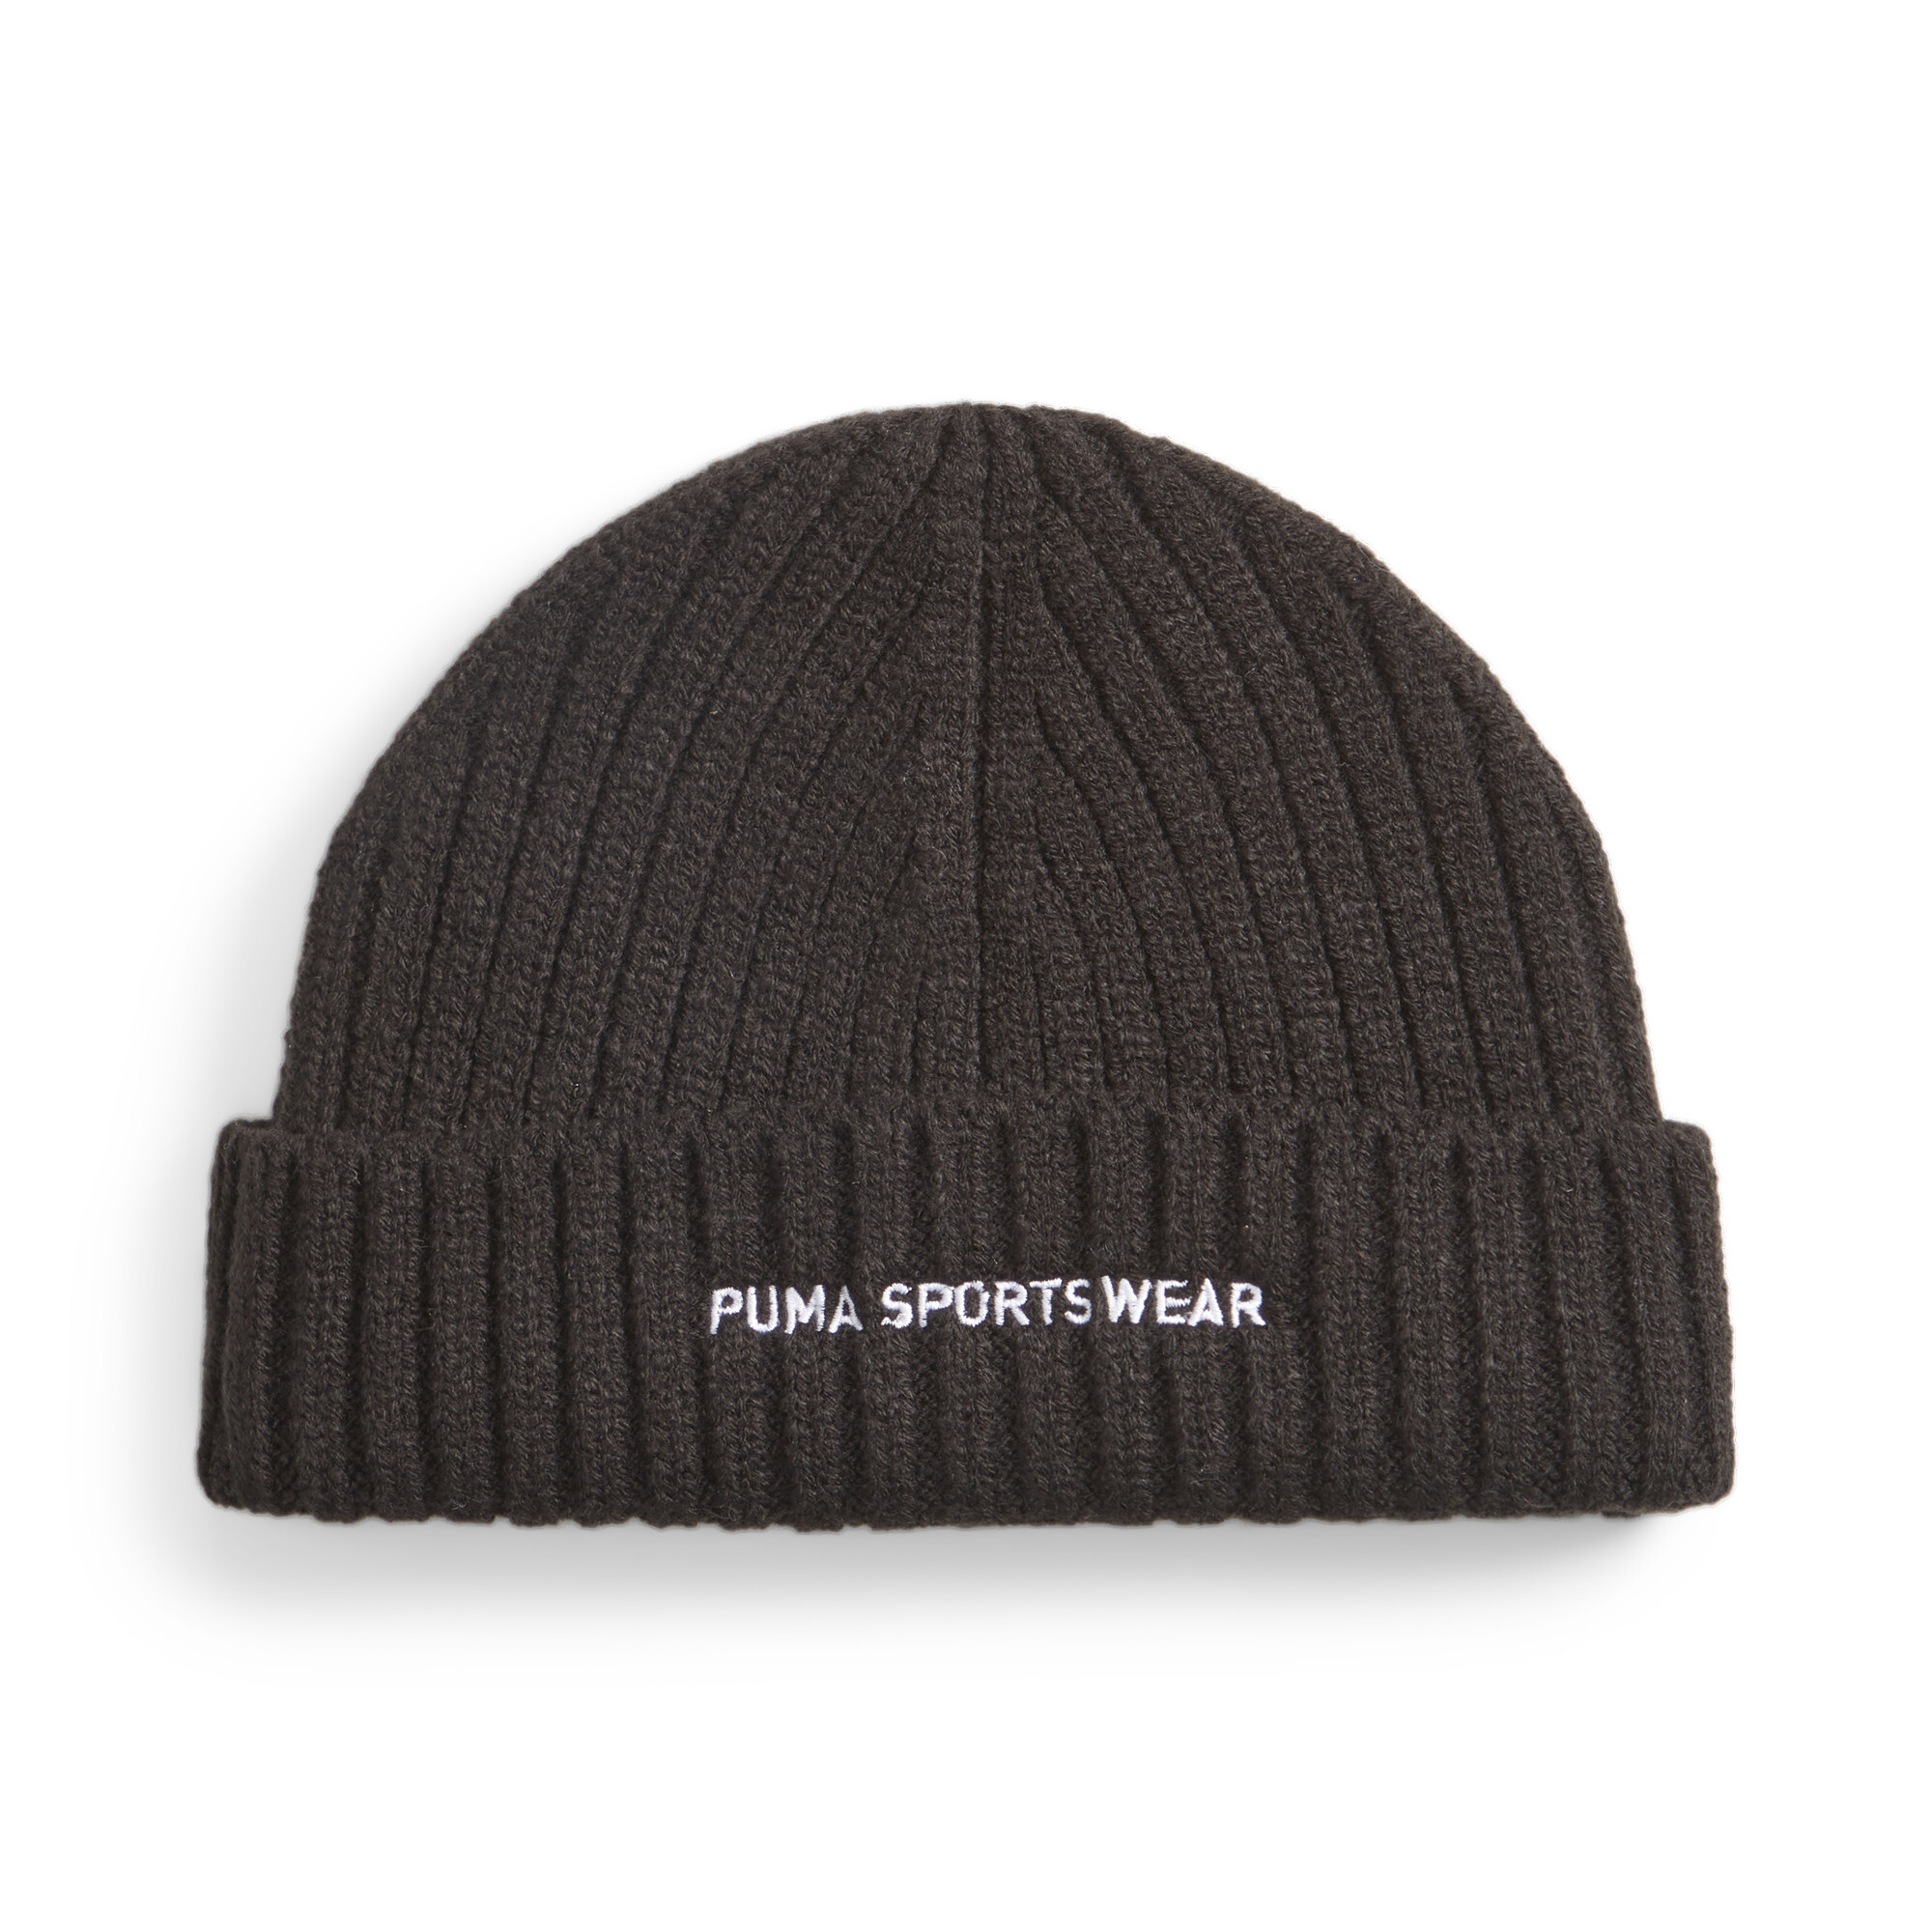 Puma Sportwear Fisherman Beanie Hat, Black, Size Adult, Accessories